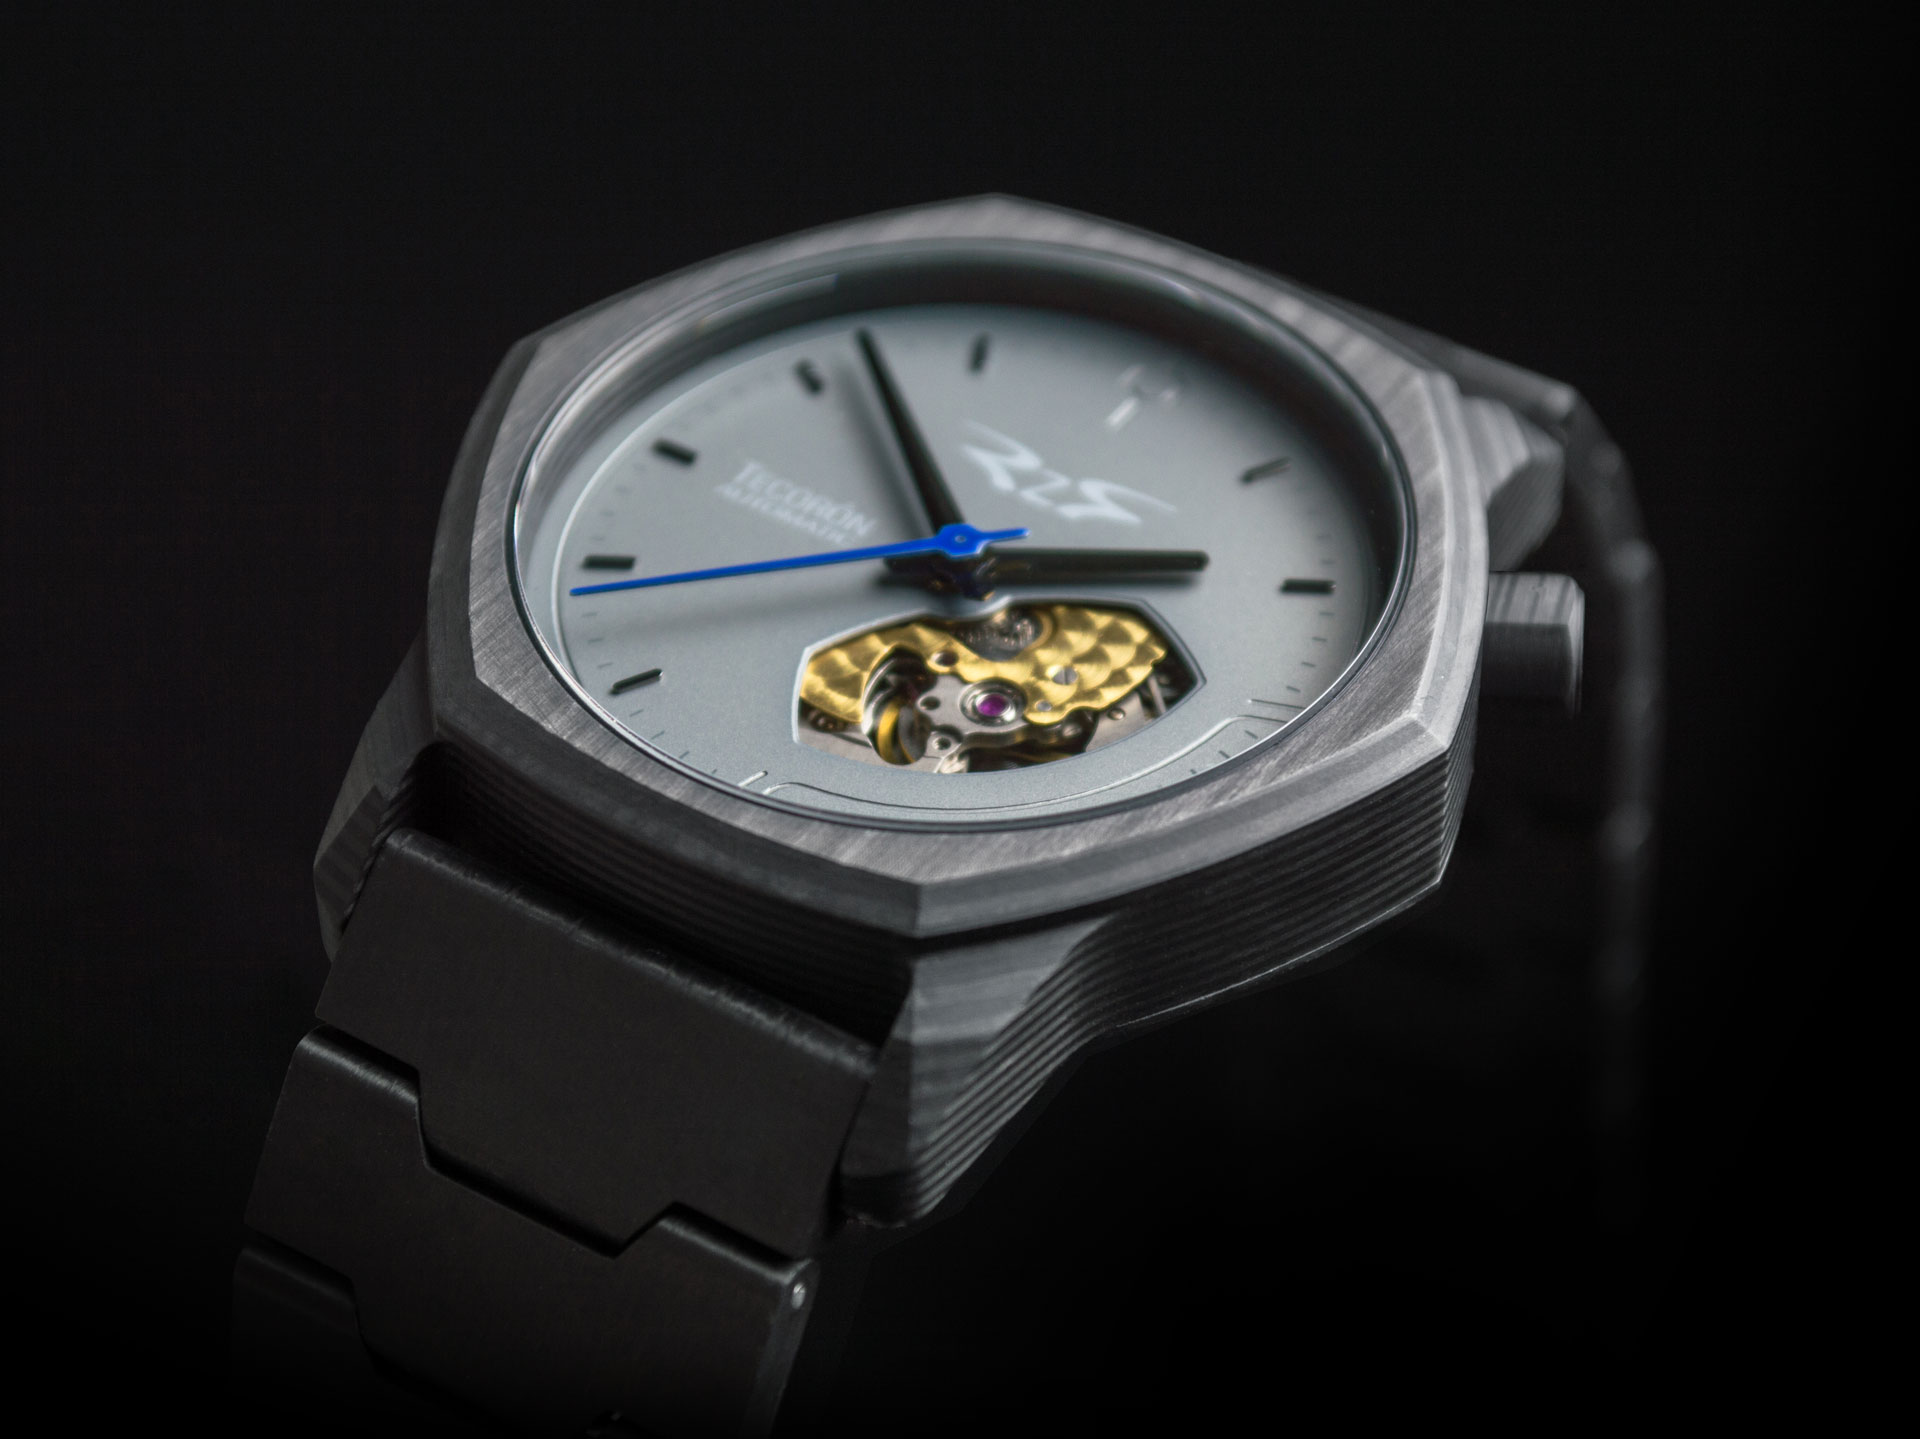 Carbon fiber watch